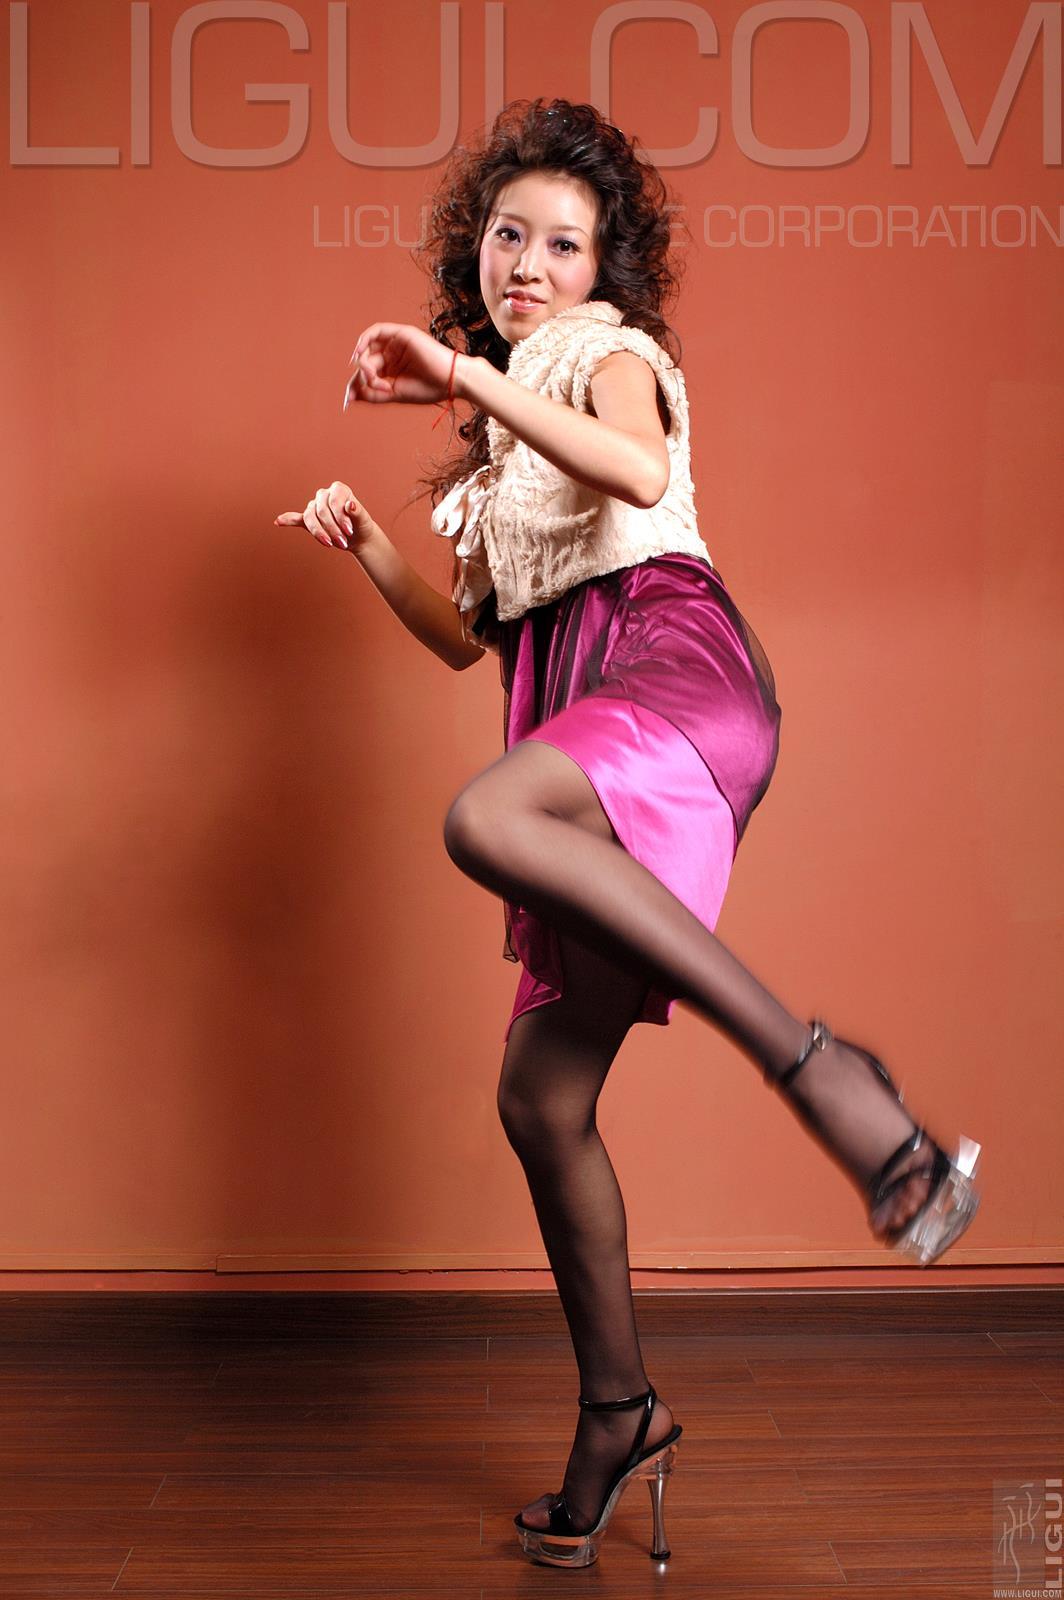 [Ligui丽柜会所]2007-01-02 文婷 白色短袖与紫色吊带连衣裙加黑色丝袜美腿性感私房写真集,